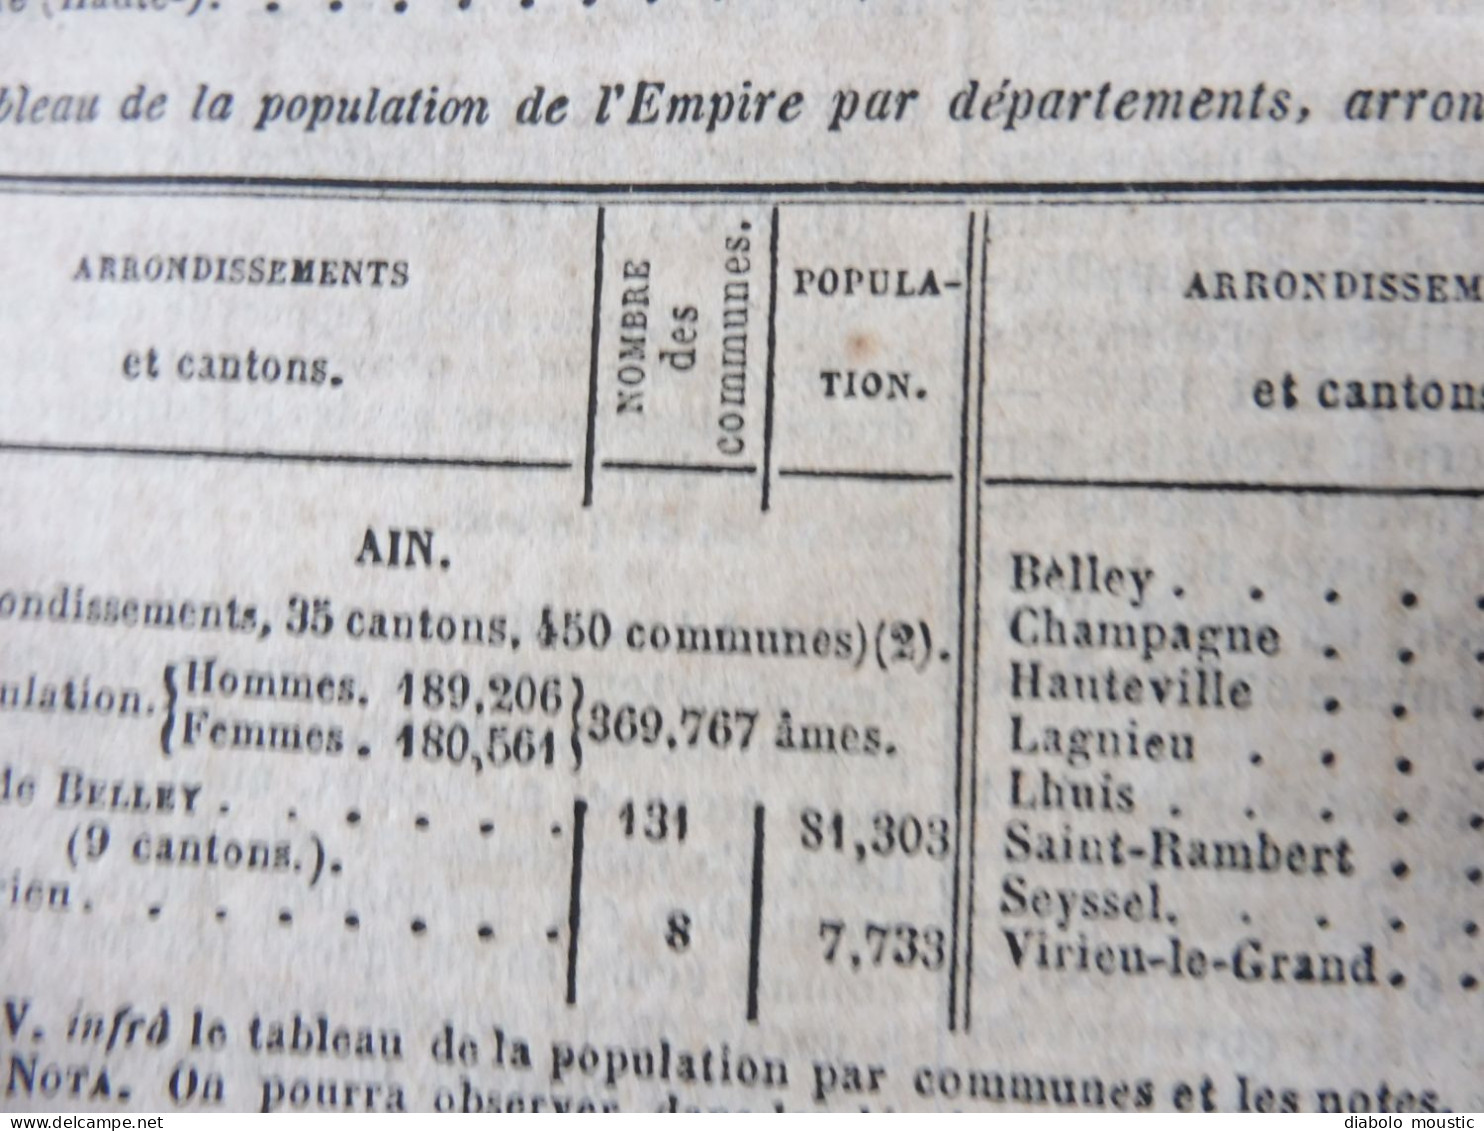 1862  RECUEIL des LOIS : Tableaux de population des départements de l'Empire  ;Reconstruction Pont MORAND à Nantes; Etc